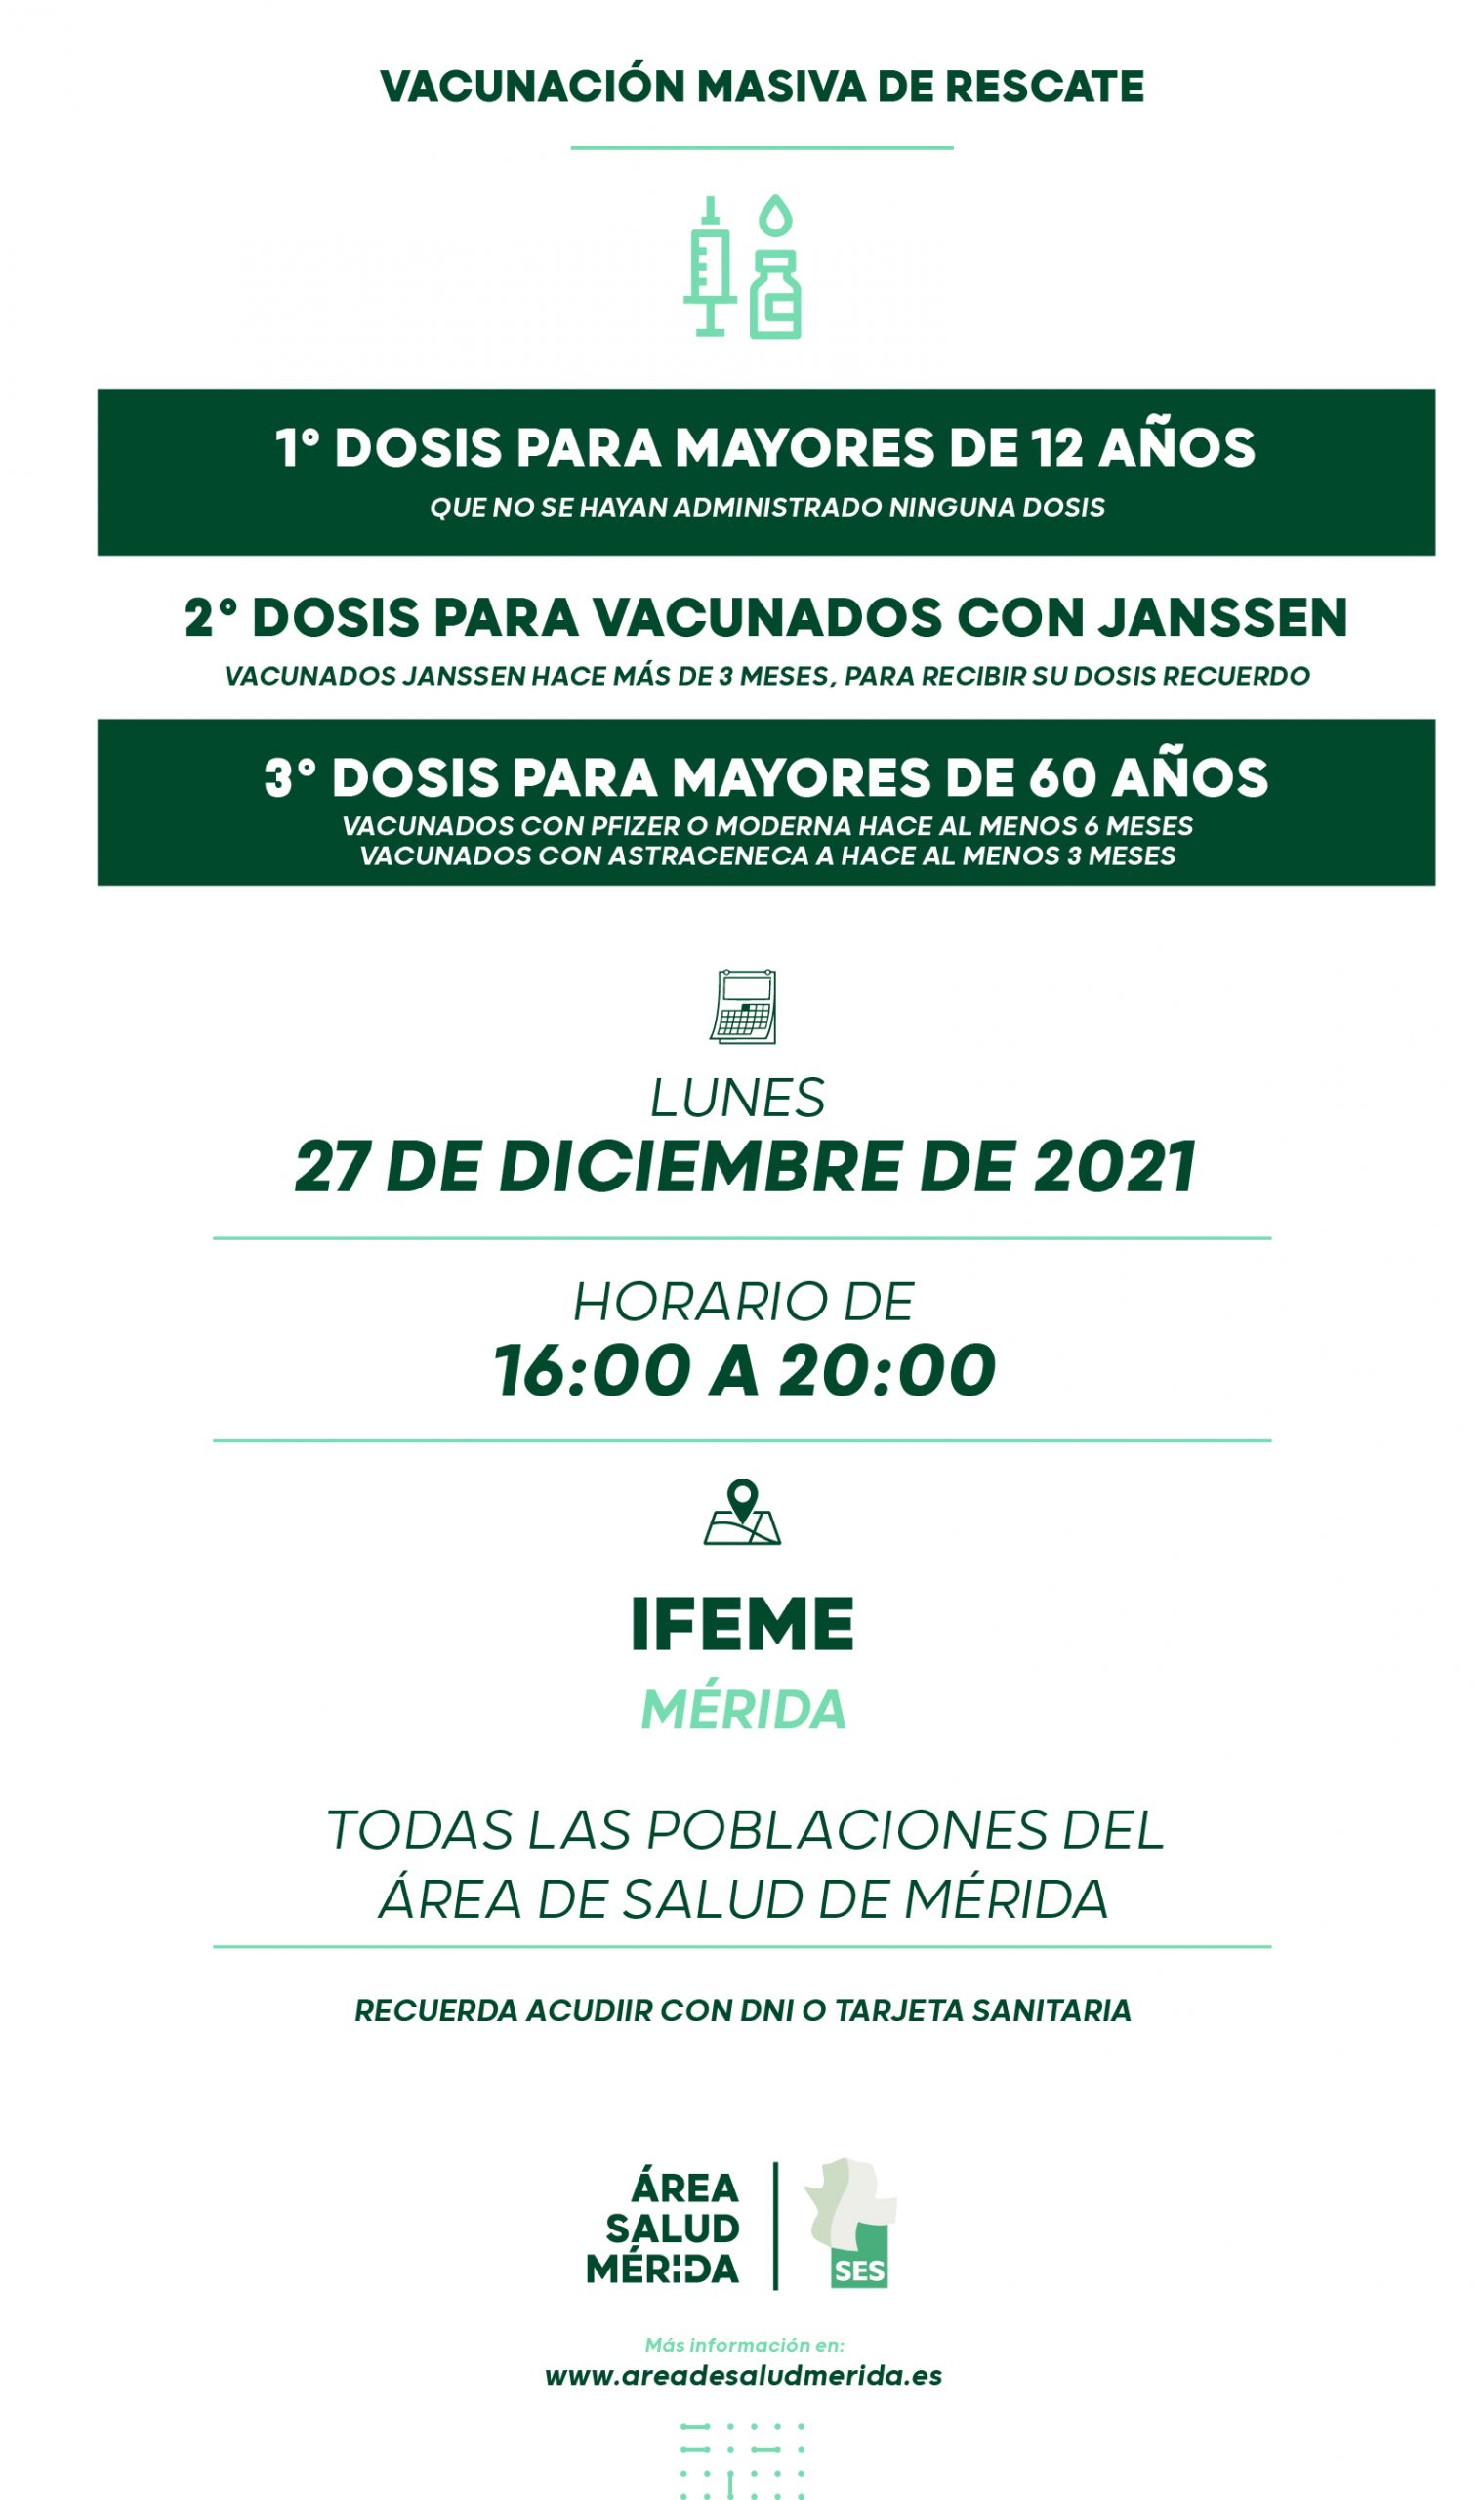 Llamamiento de rescate, lunes 27 de Diciembre, todas las poblaciones del Área de Salud de Mérida.